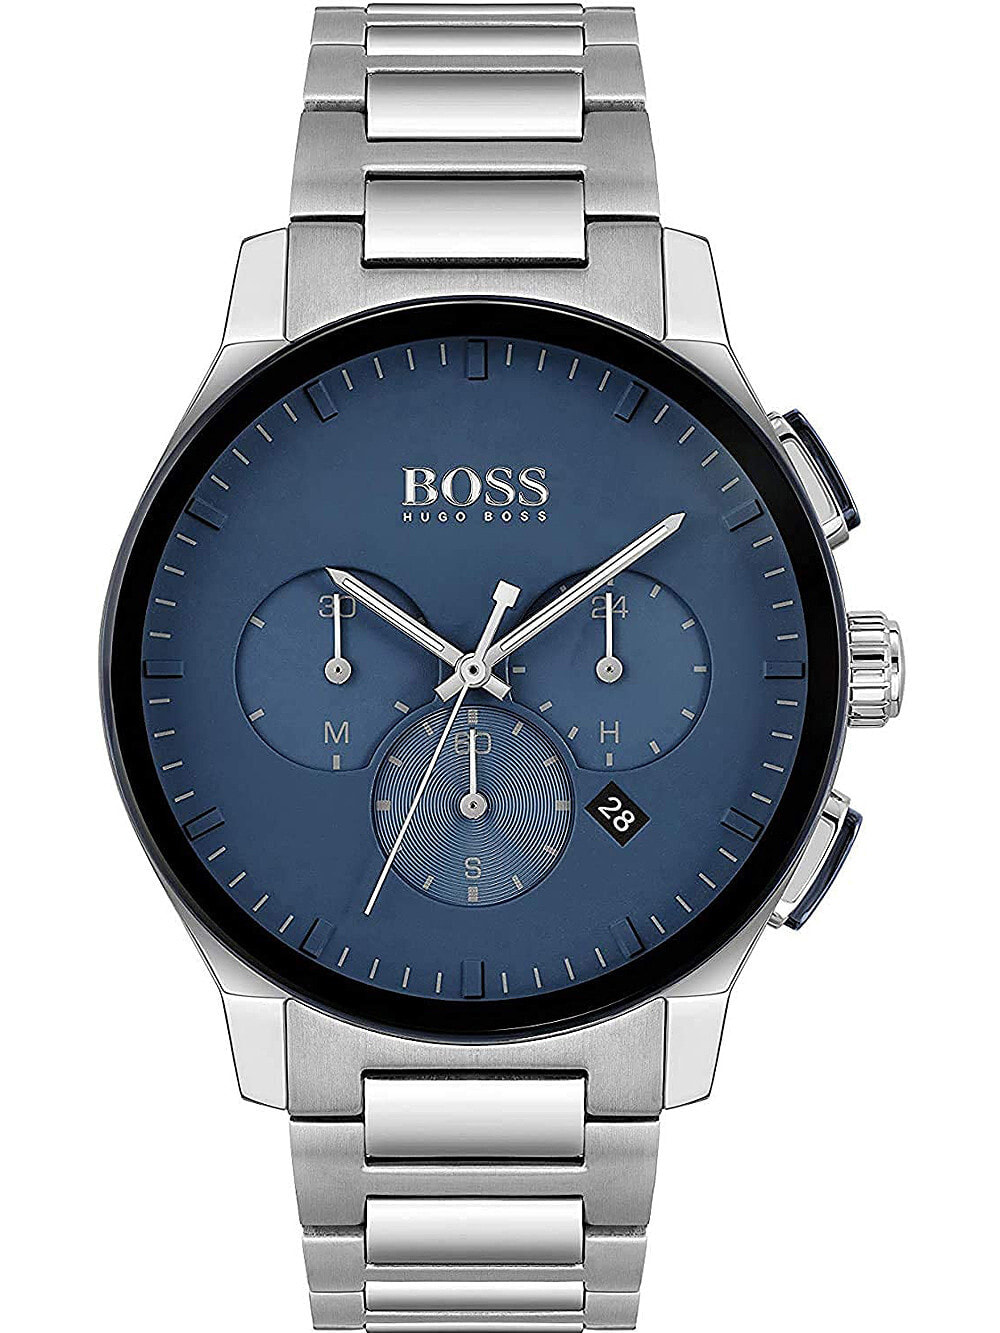 Мужские наручные часы с серебряным браслетом Hugo Boss 1513763 Peak chrono 44mm 3ATM